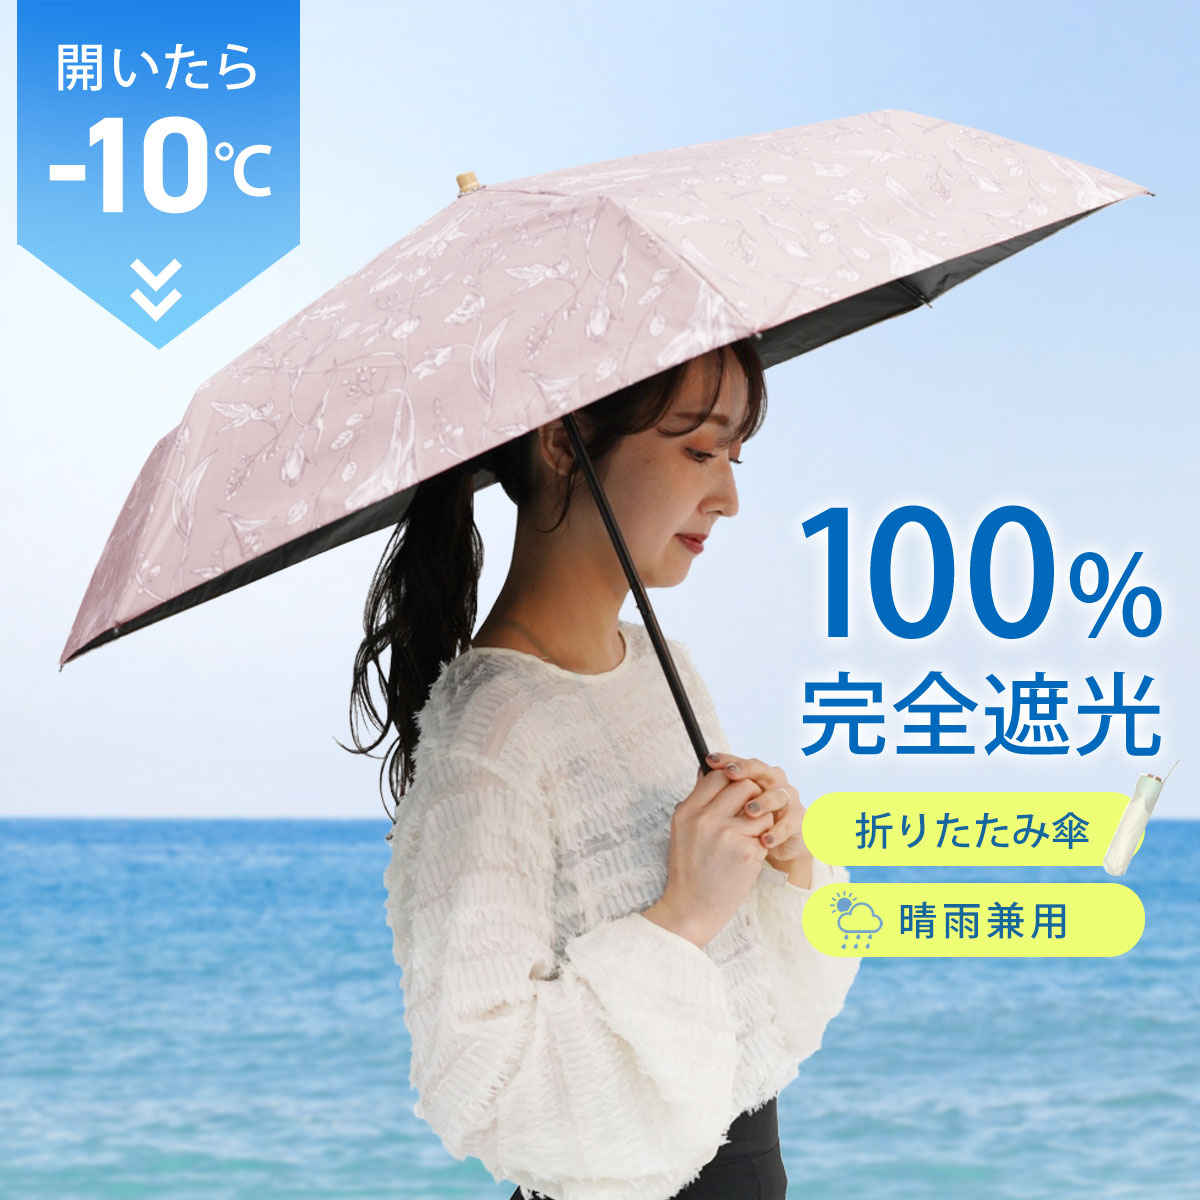 日傘 完全遮光 折りたたみ 折り畳み傘 晴雨兼用 UVカット レディース 日傘 軽量 遮熱 遮光率 100% CLS